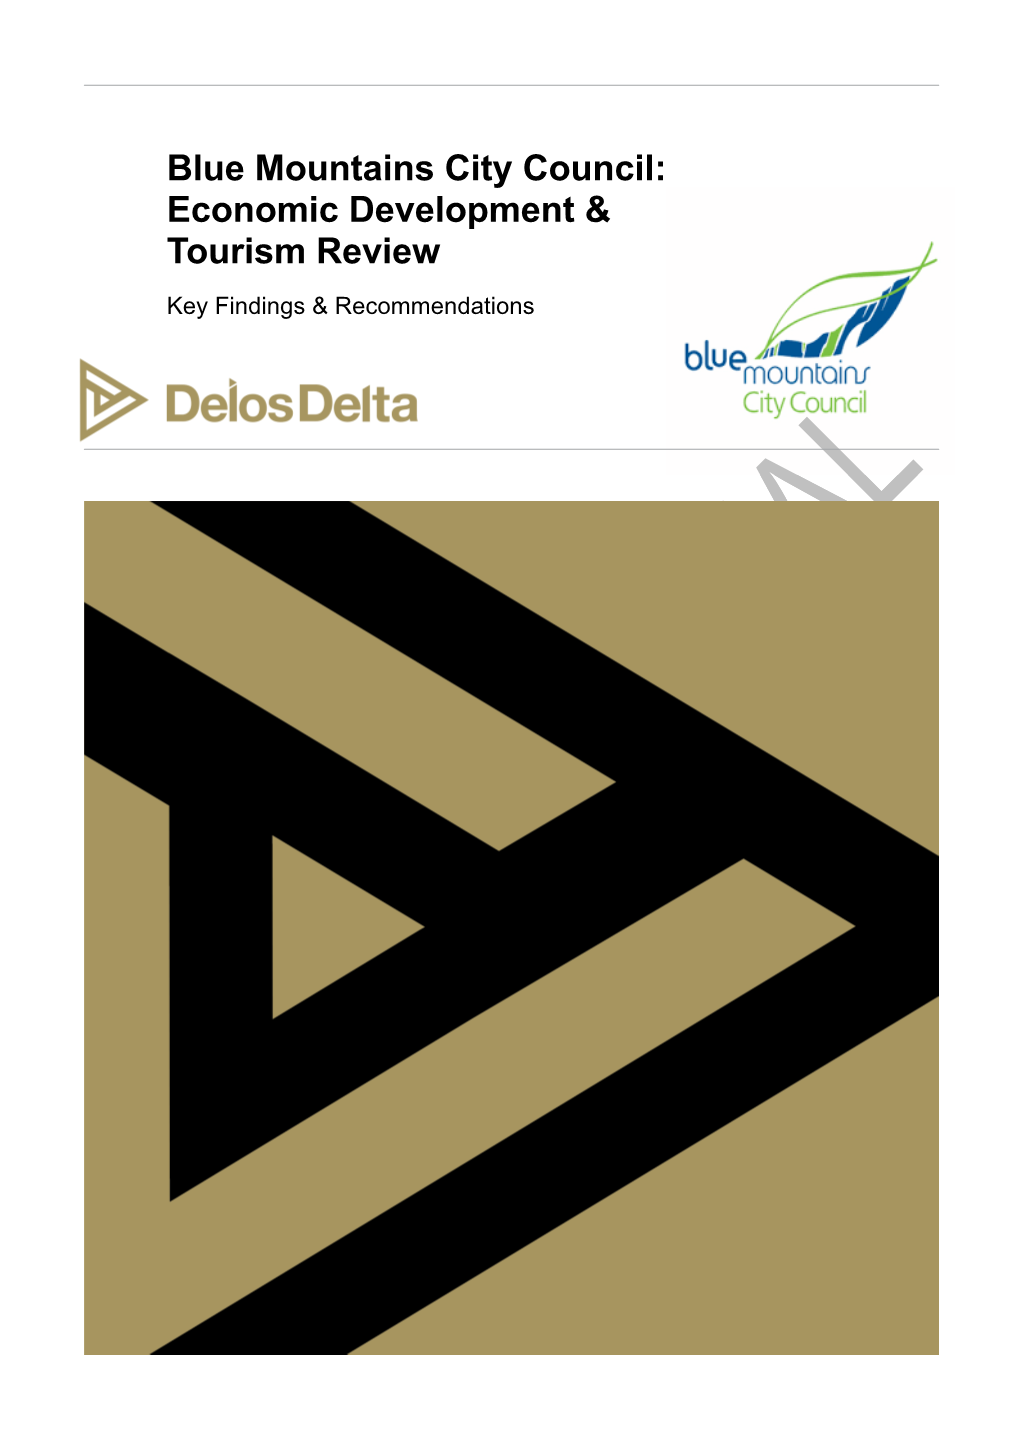 Economic Development & Tourism Review